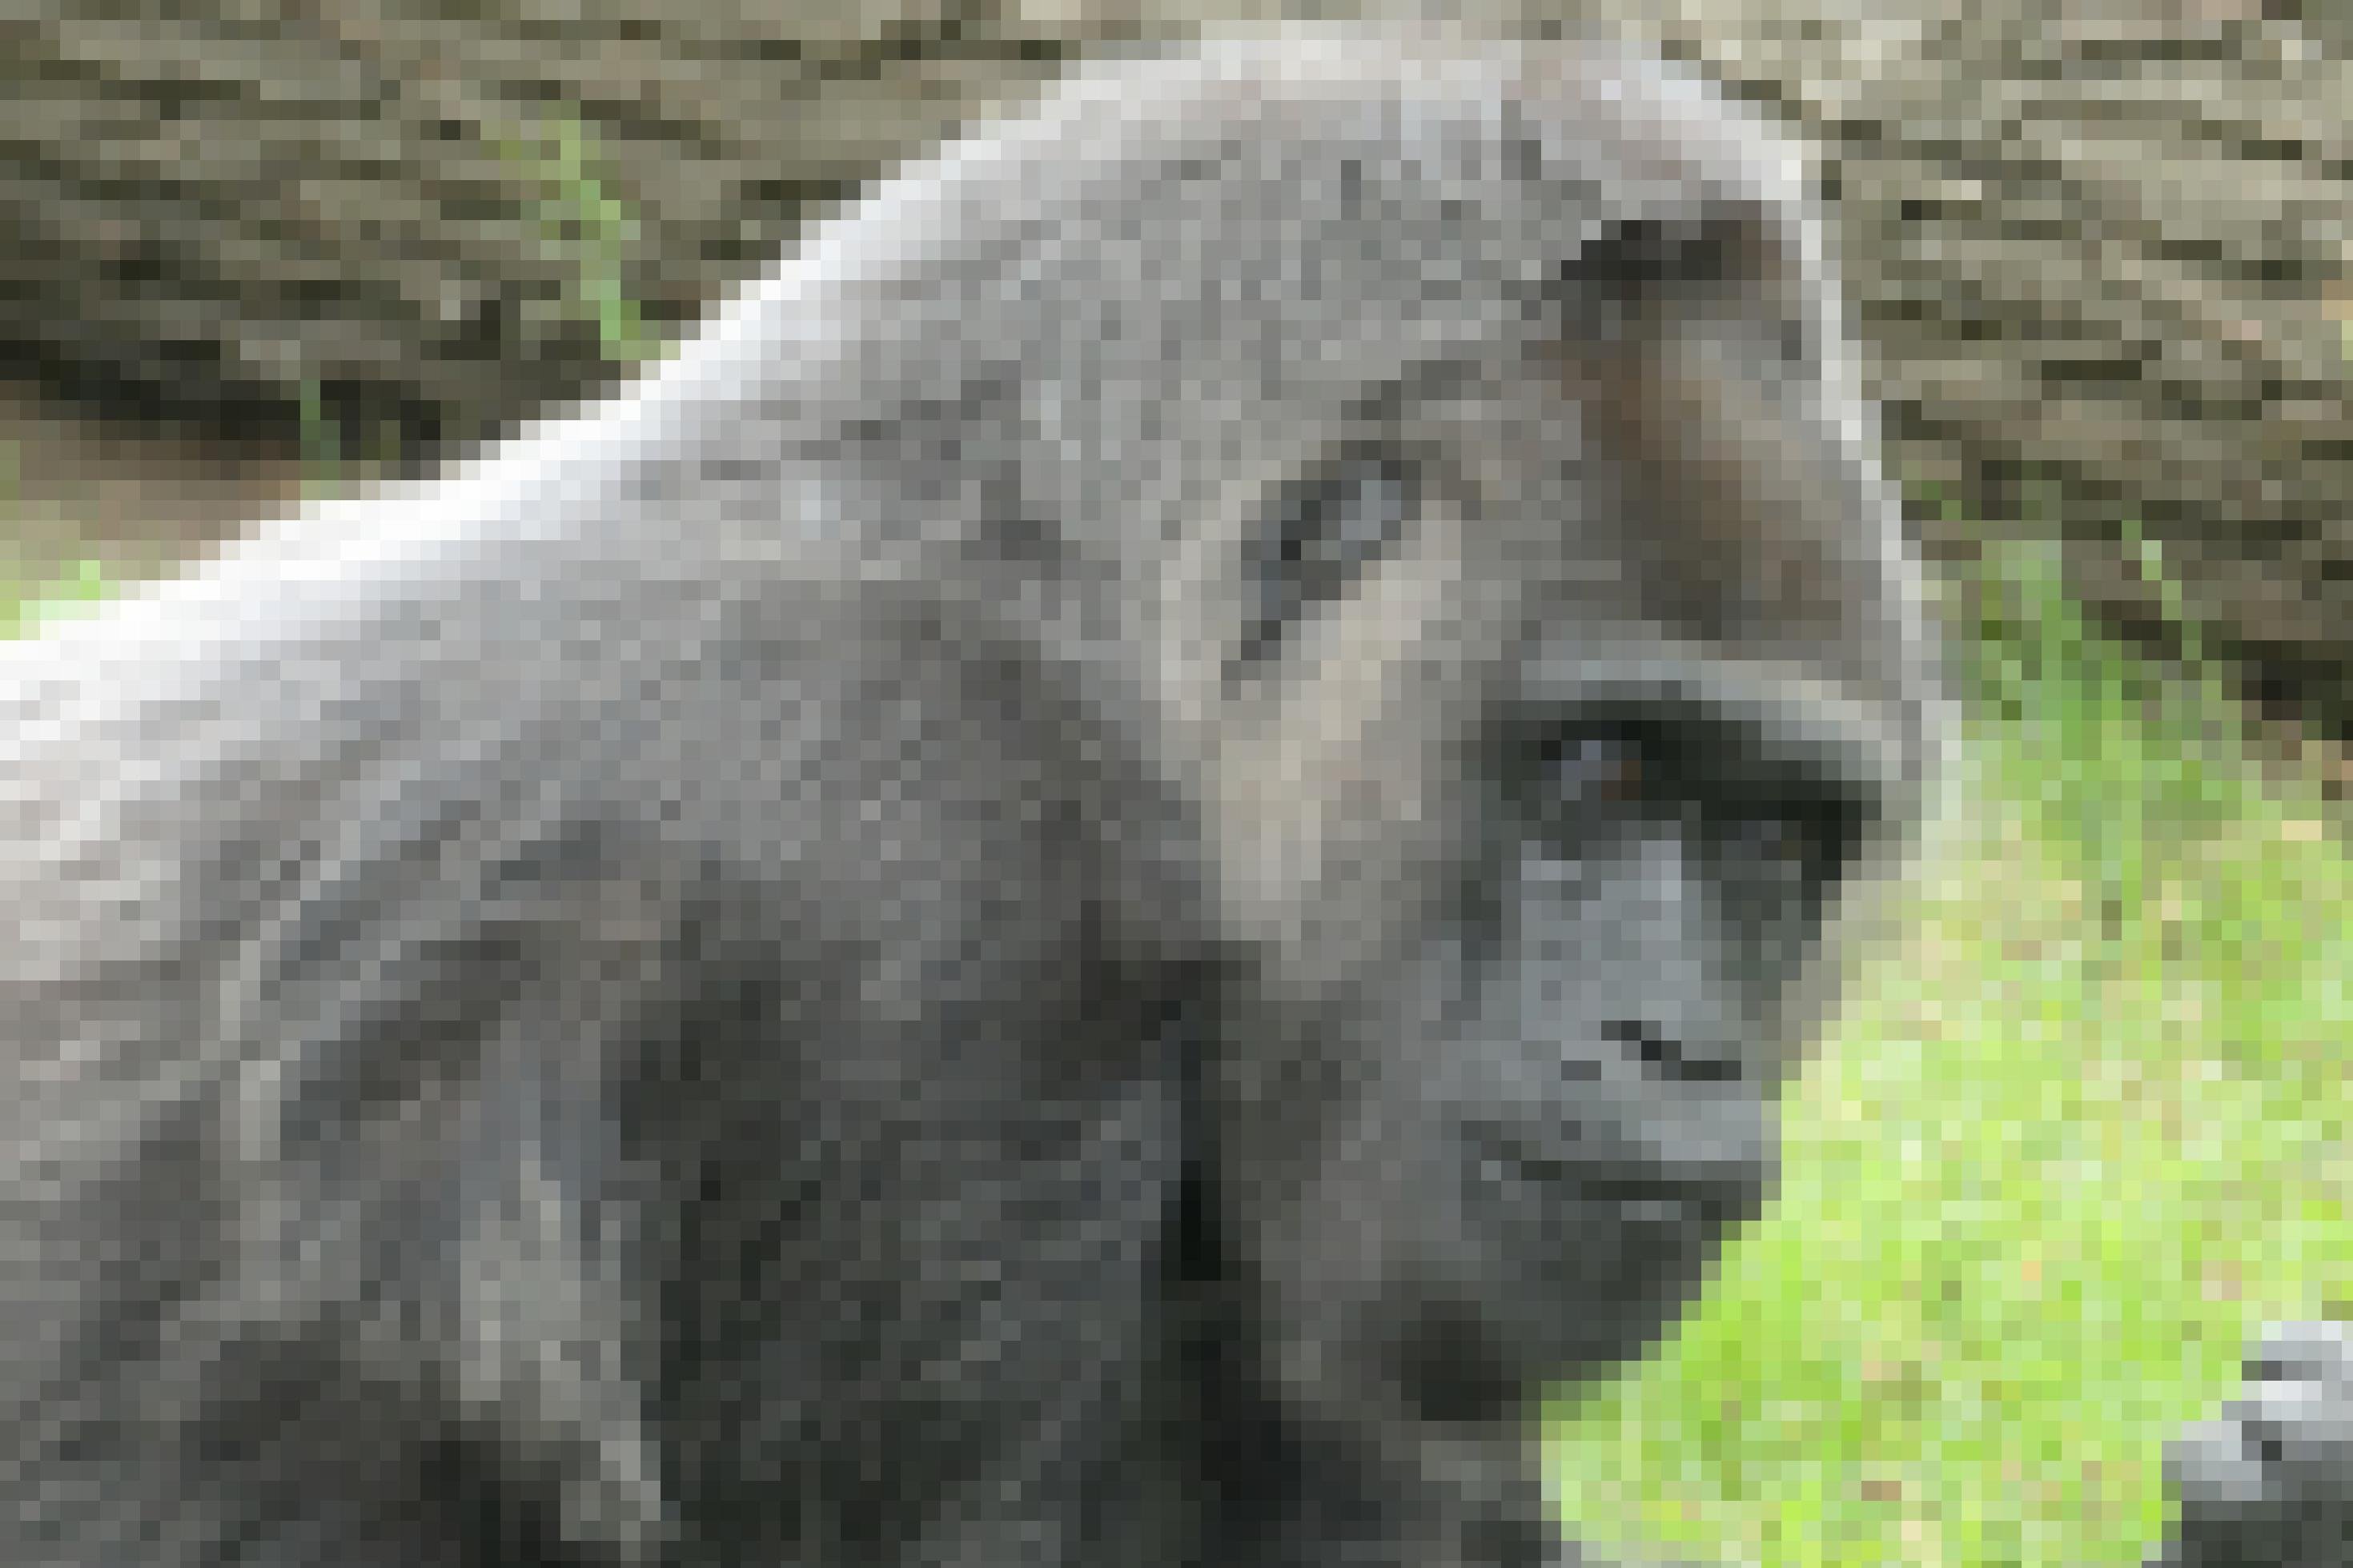 Das Bild zeigt den weiblichen Gorilla Fatou, der im Zoologischen Garten Berlin lebt und bereits über 60 Jahre alt ist. Die schon etwas ergraute Affendame gilt als ältester im Zoo lebender Gorilla. Ihr Blick wirkt sehr menschlich, etwas in sich gekehrt und nachdenklich.